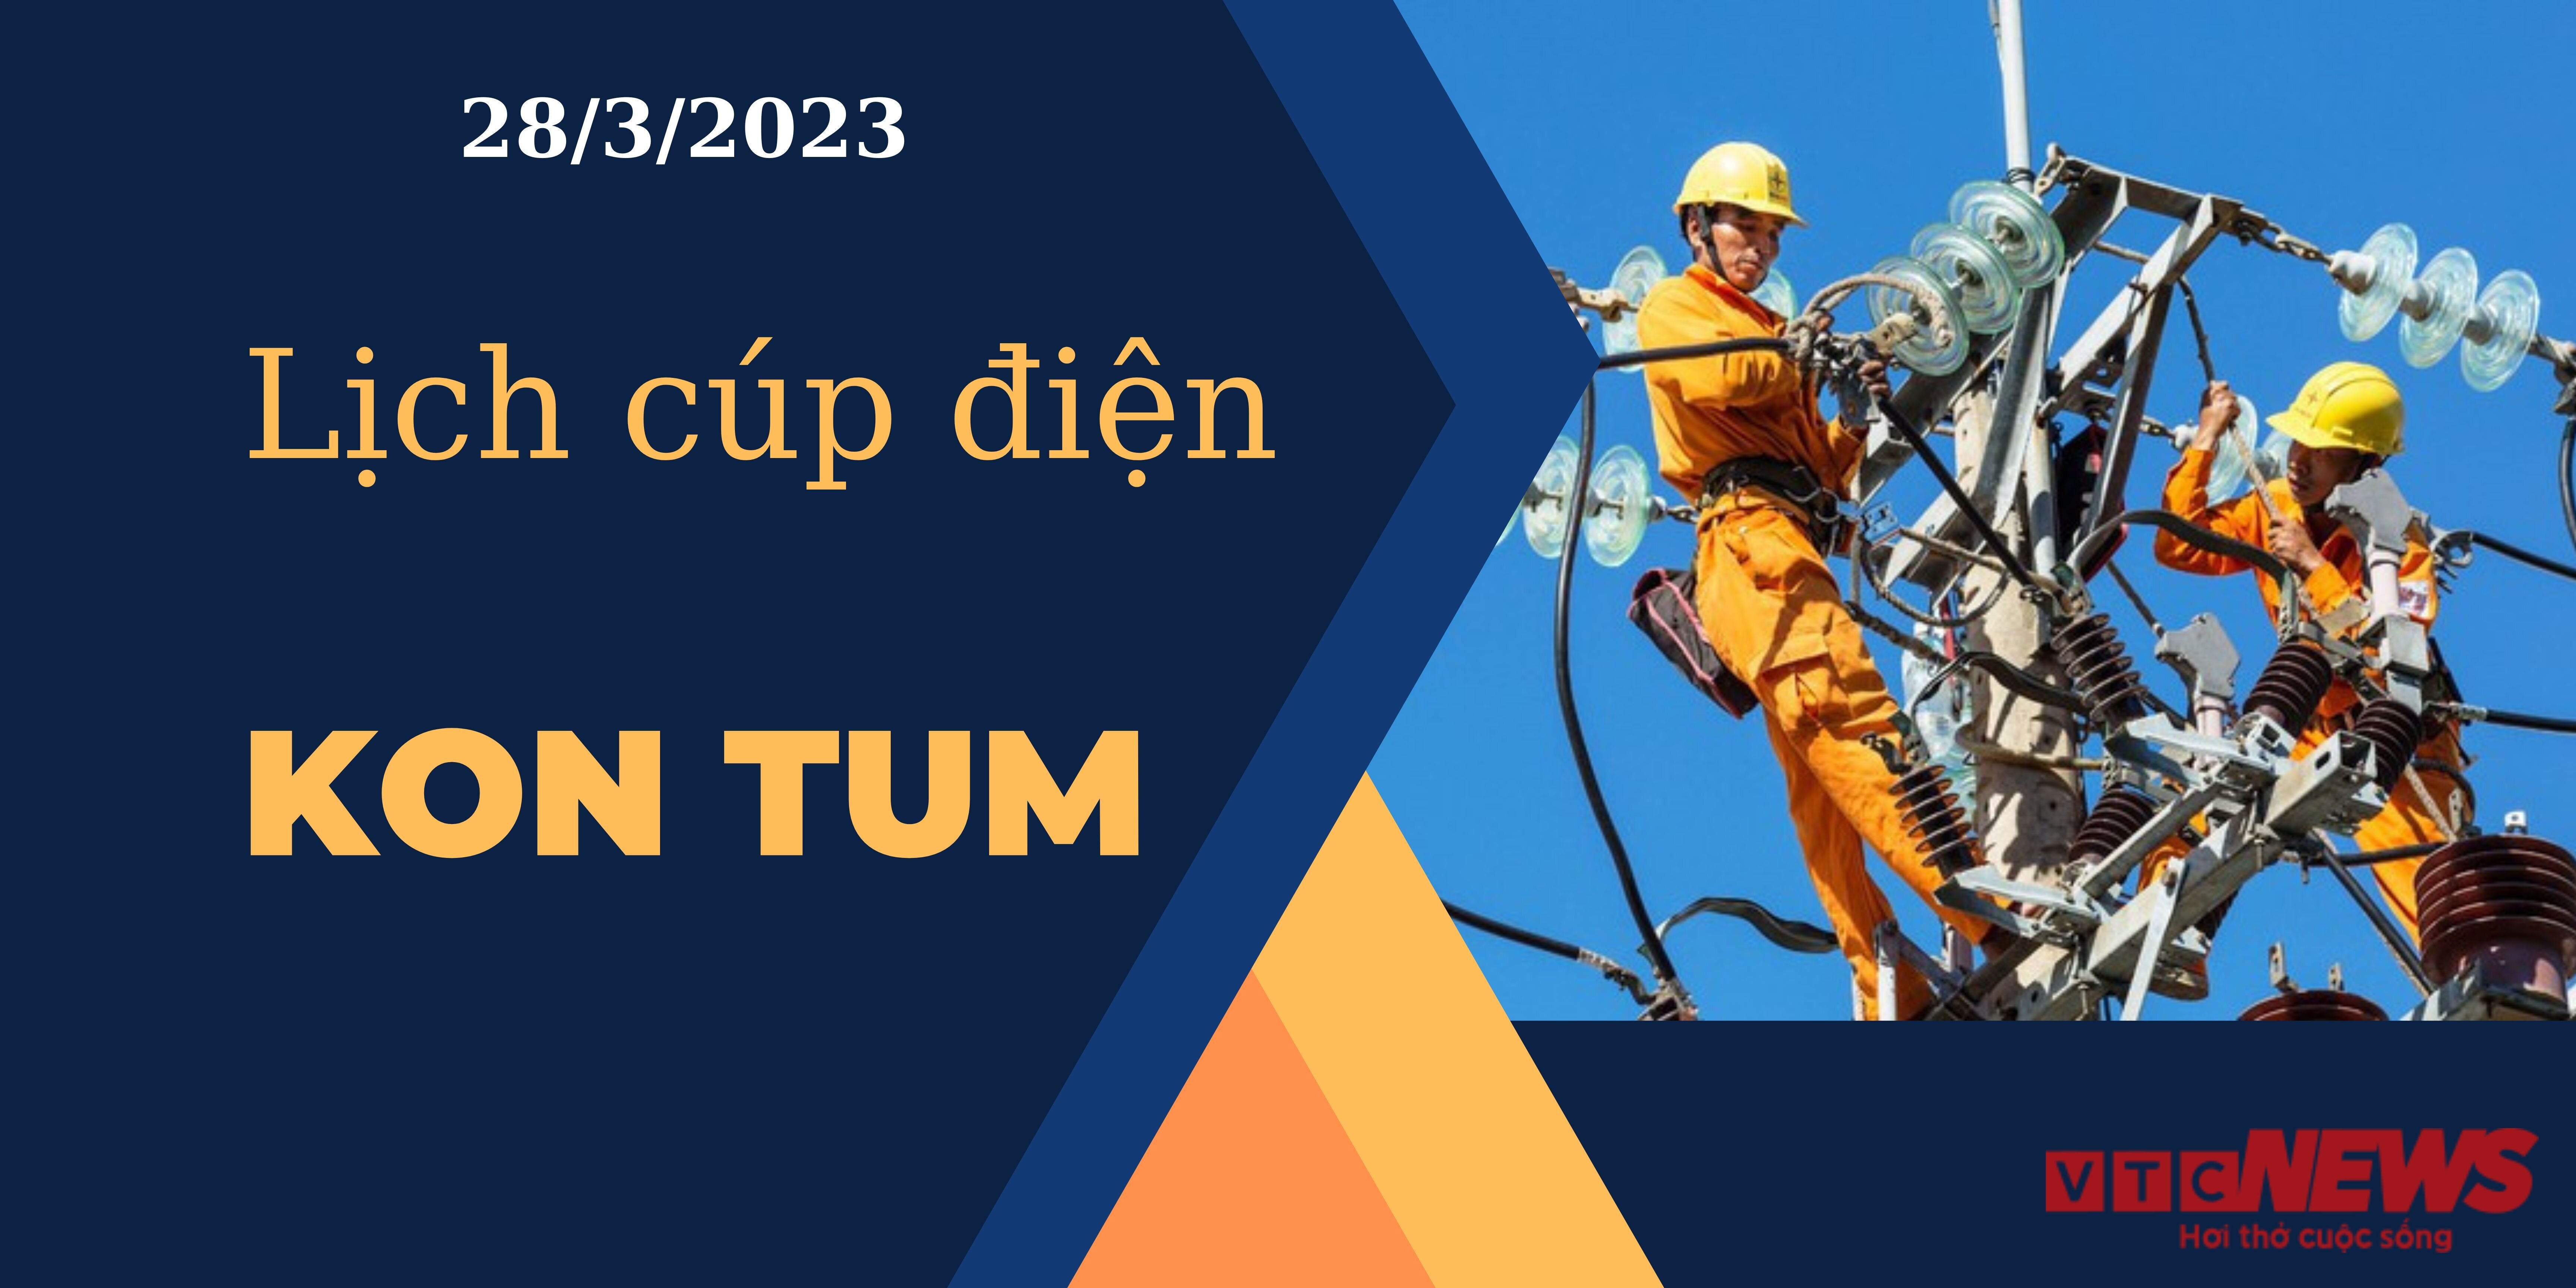 Lịch cúp điện hôm nay ngày 28/3/2023 tại Kon Tum - 1